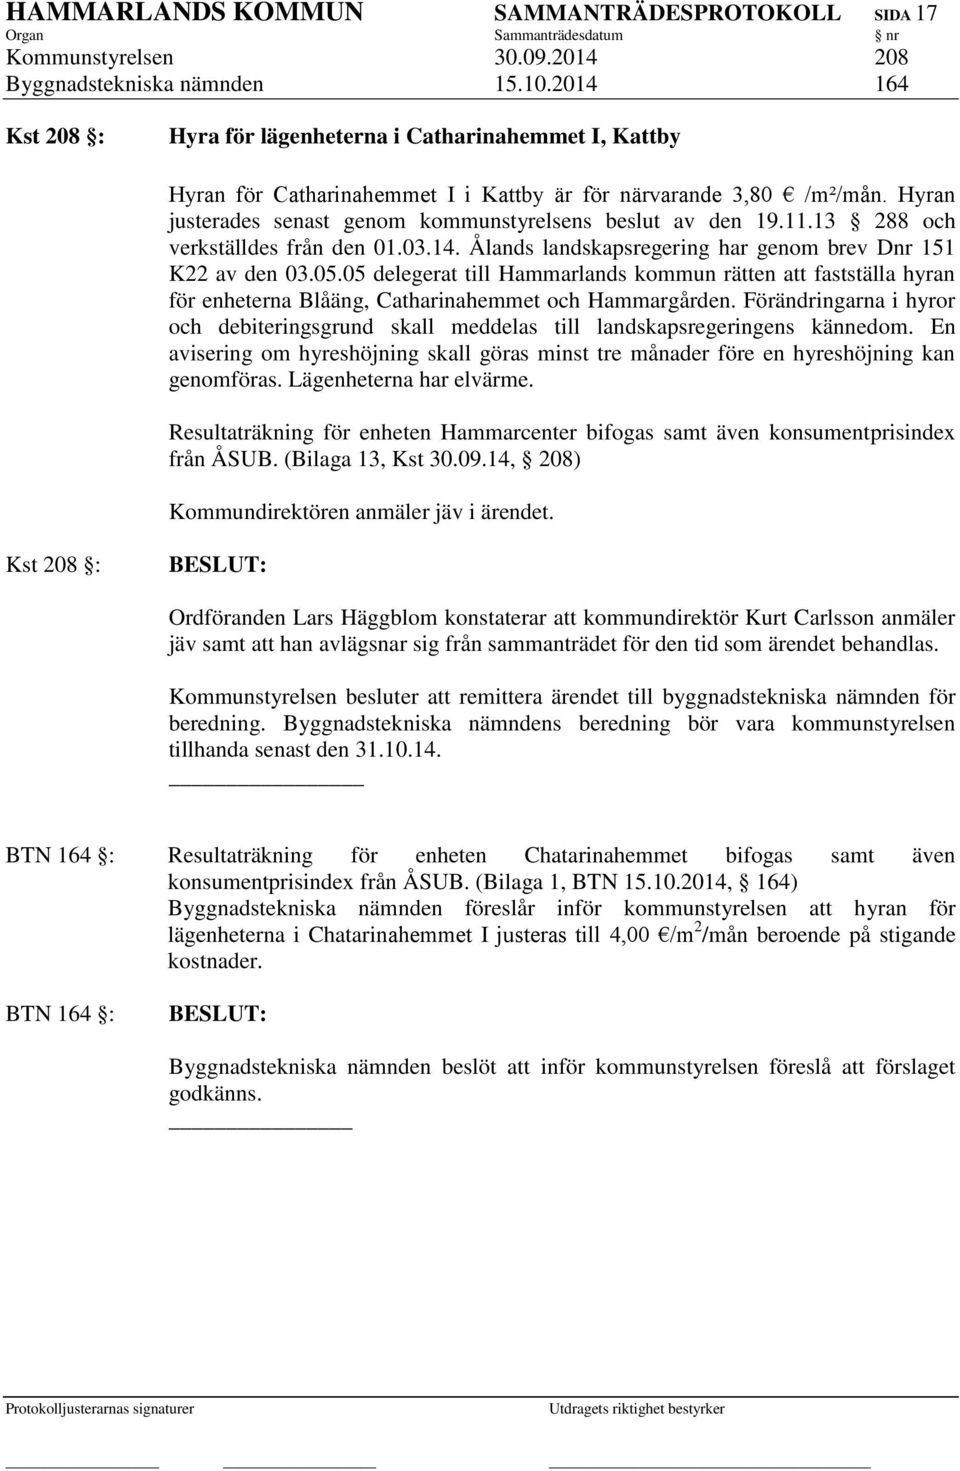 Hyran justerades senast genom kommunstyrelsens beslut av den 19.11.13 288 och verkställdes från den 01.03.14. Ålands landskapsregering har genom brev Dnr 151 K22 av den 03.05.